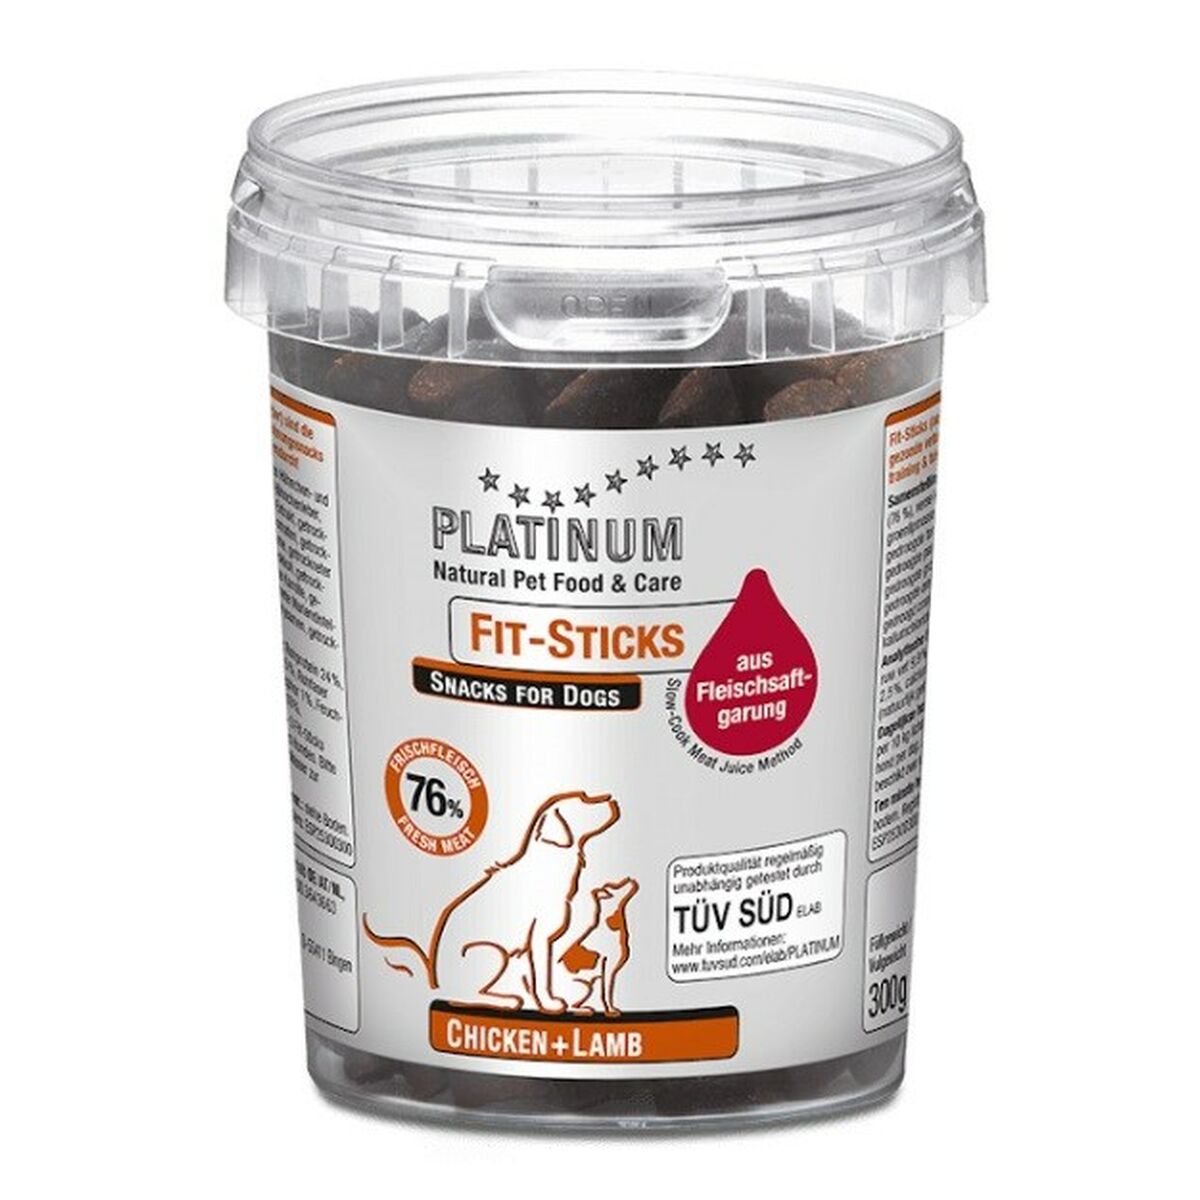 Snack per Cani Platinum Fit-Sticks Chicken + Lamb 300 g Pollo Agnello